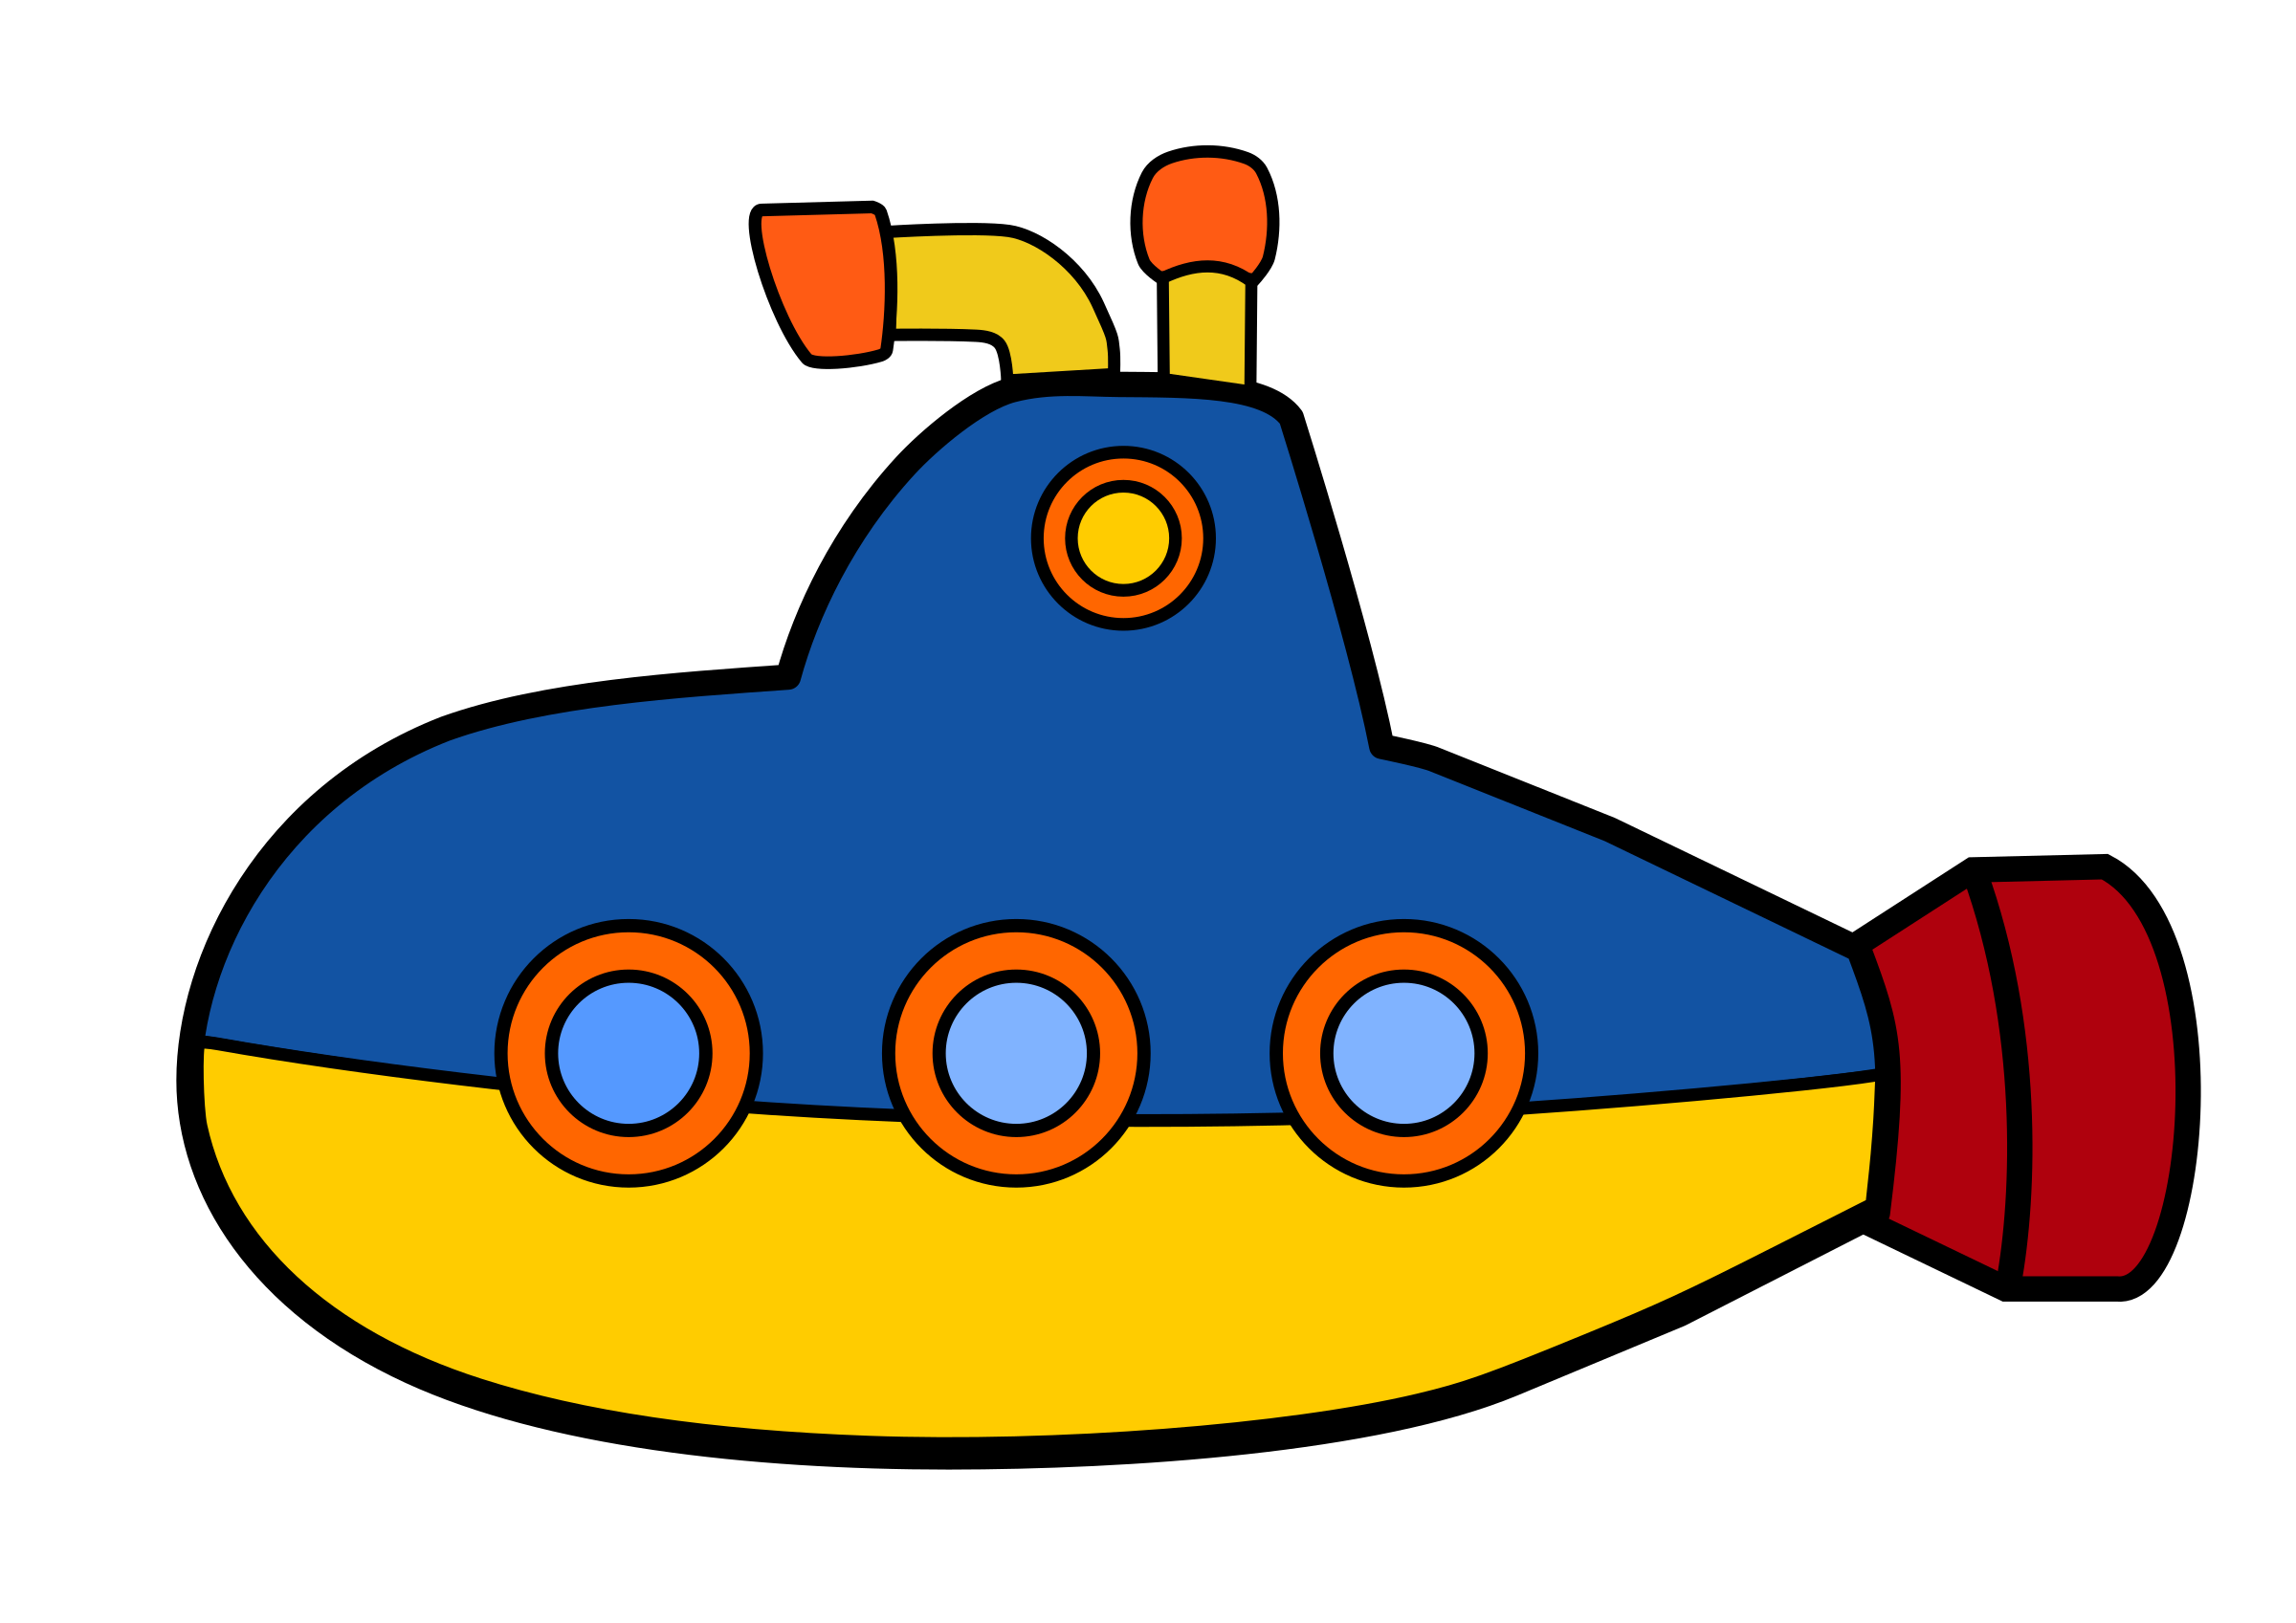 潜水艦